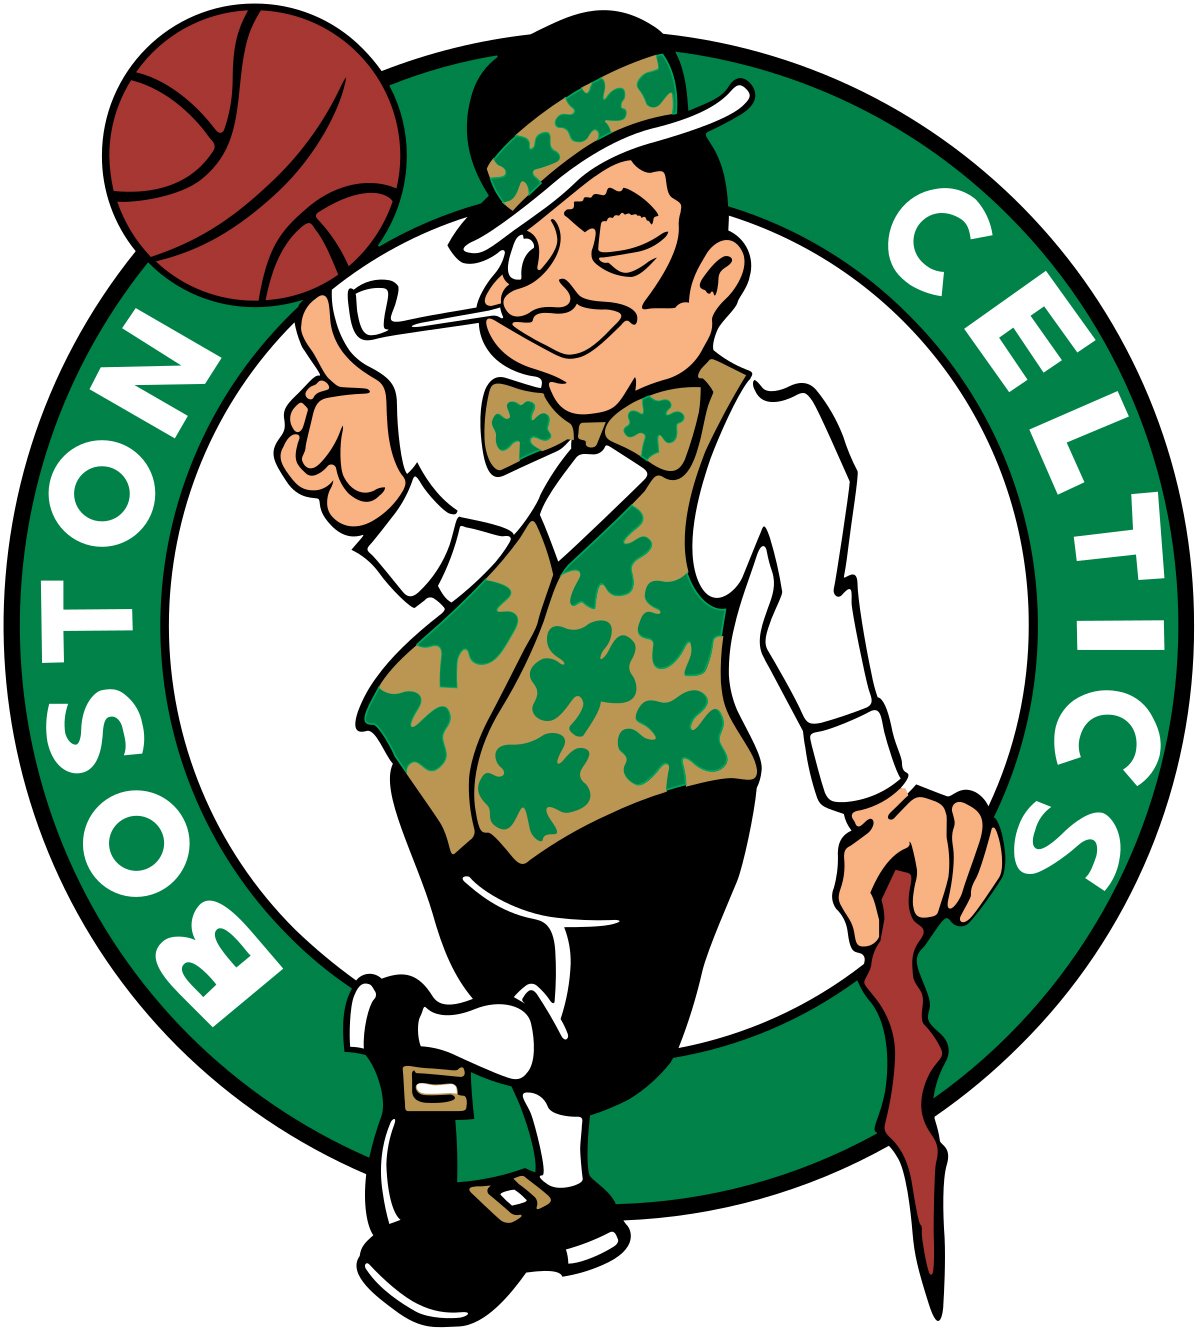 Boston Celtics in the game